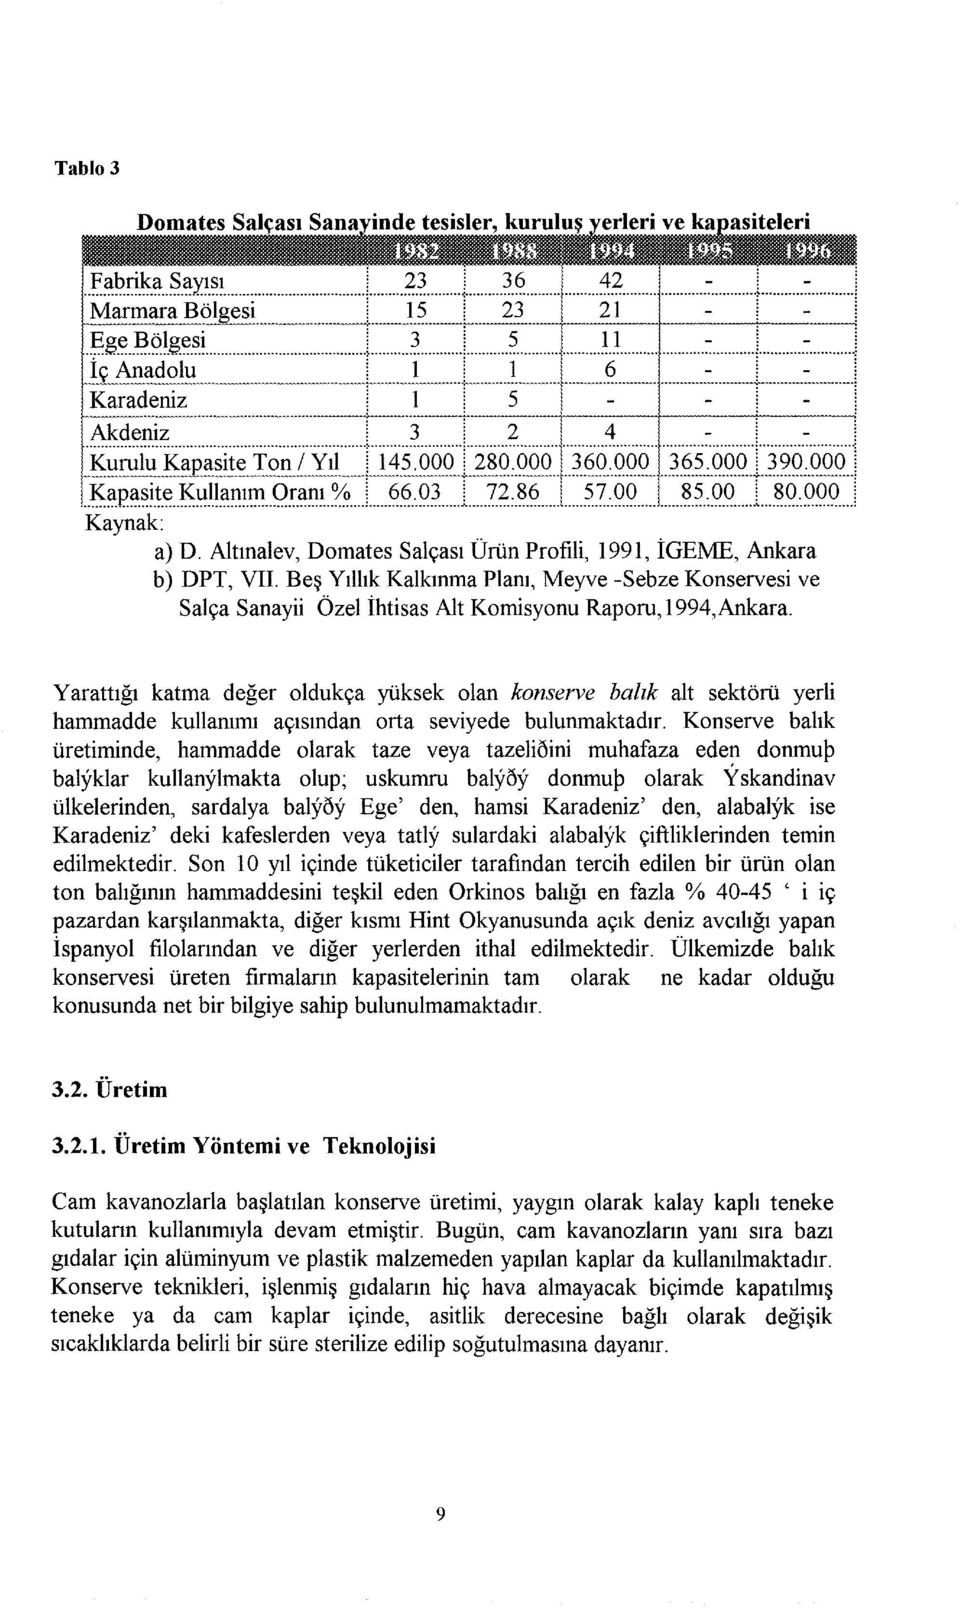 Beş Yıllık Kalkınma Planı, Meyve -Sebze Konservesi ve Salça Sanayii Özel ihtisas Alt Komisyonu Raporu, 1994,Ankara.